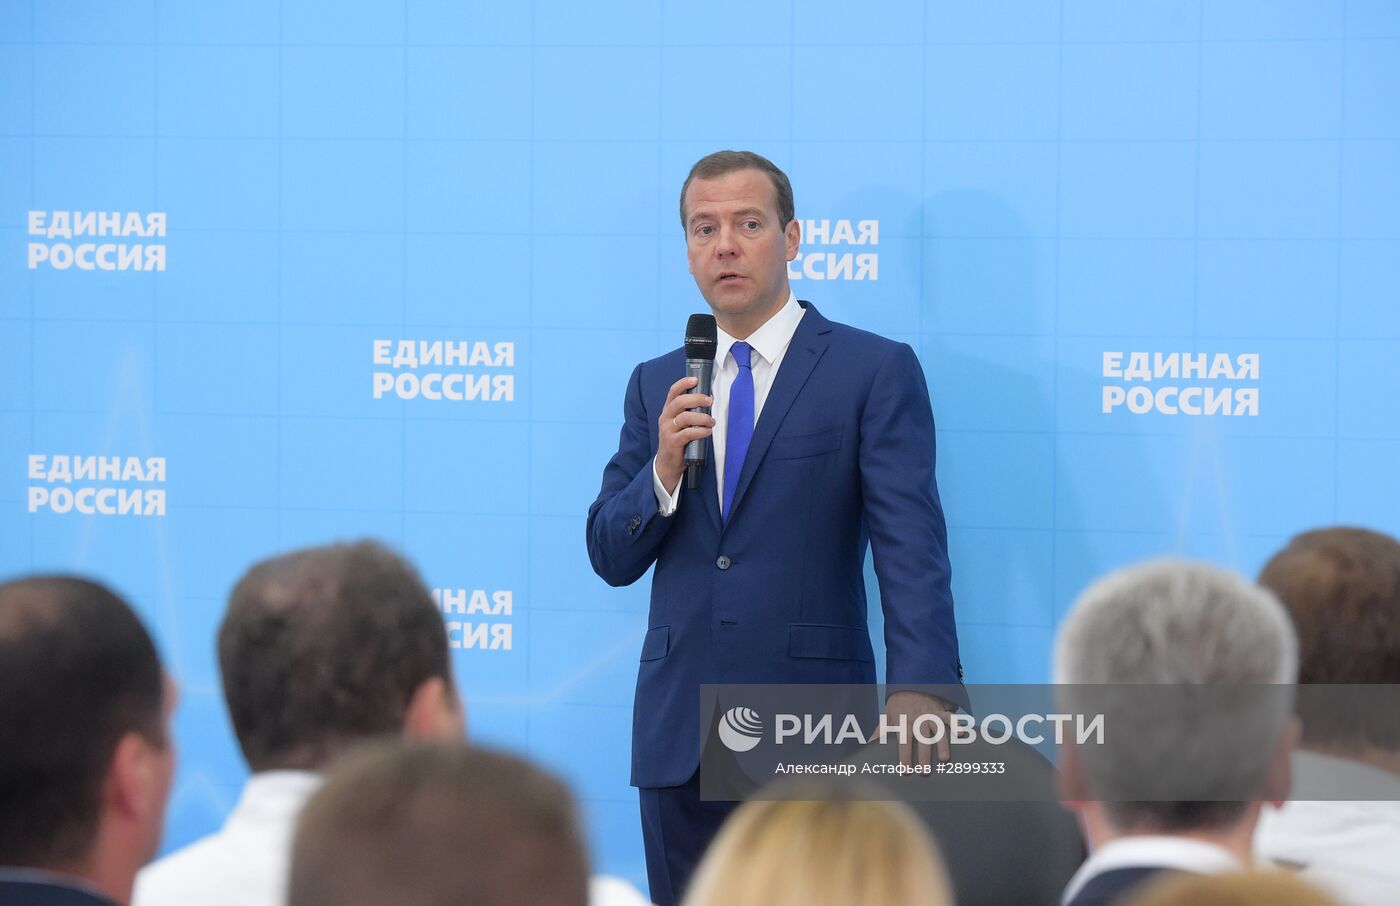 Премьер-министр РФ Д. Медведев встретился с активом партии "Единая Россия" в Москве